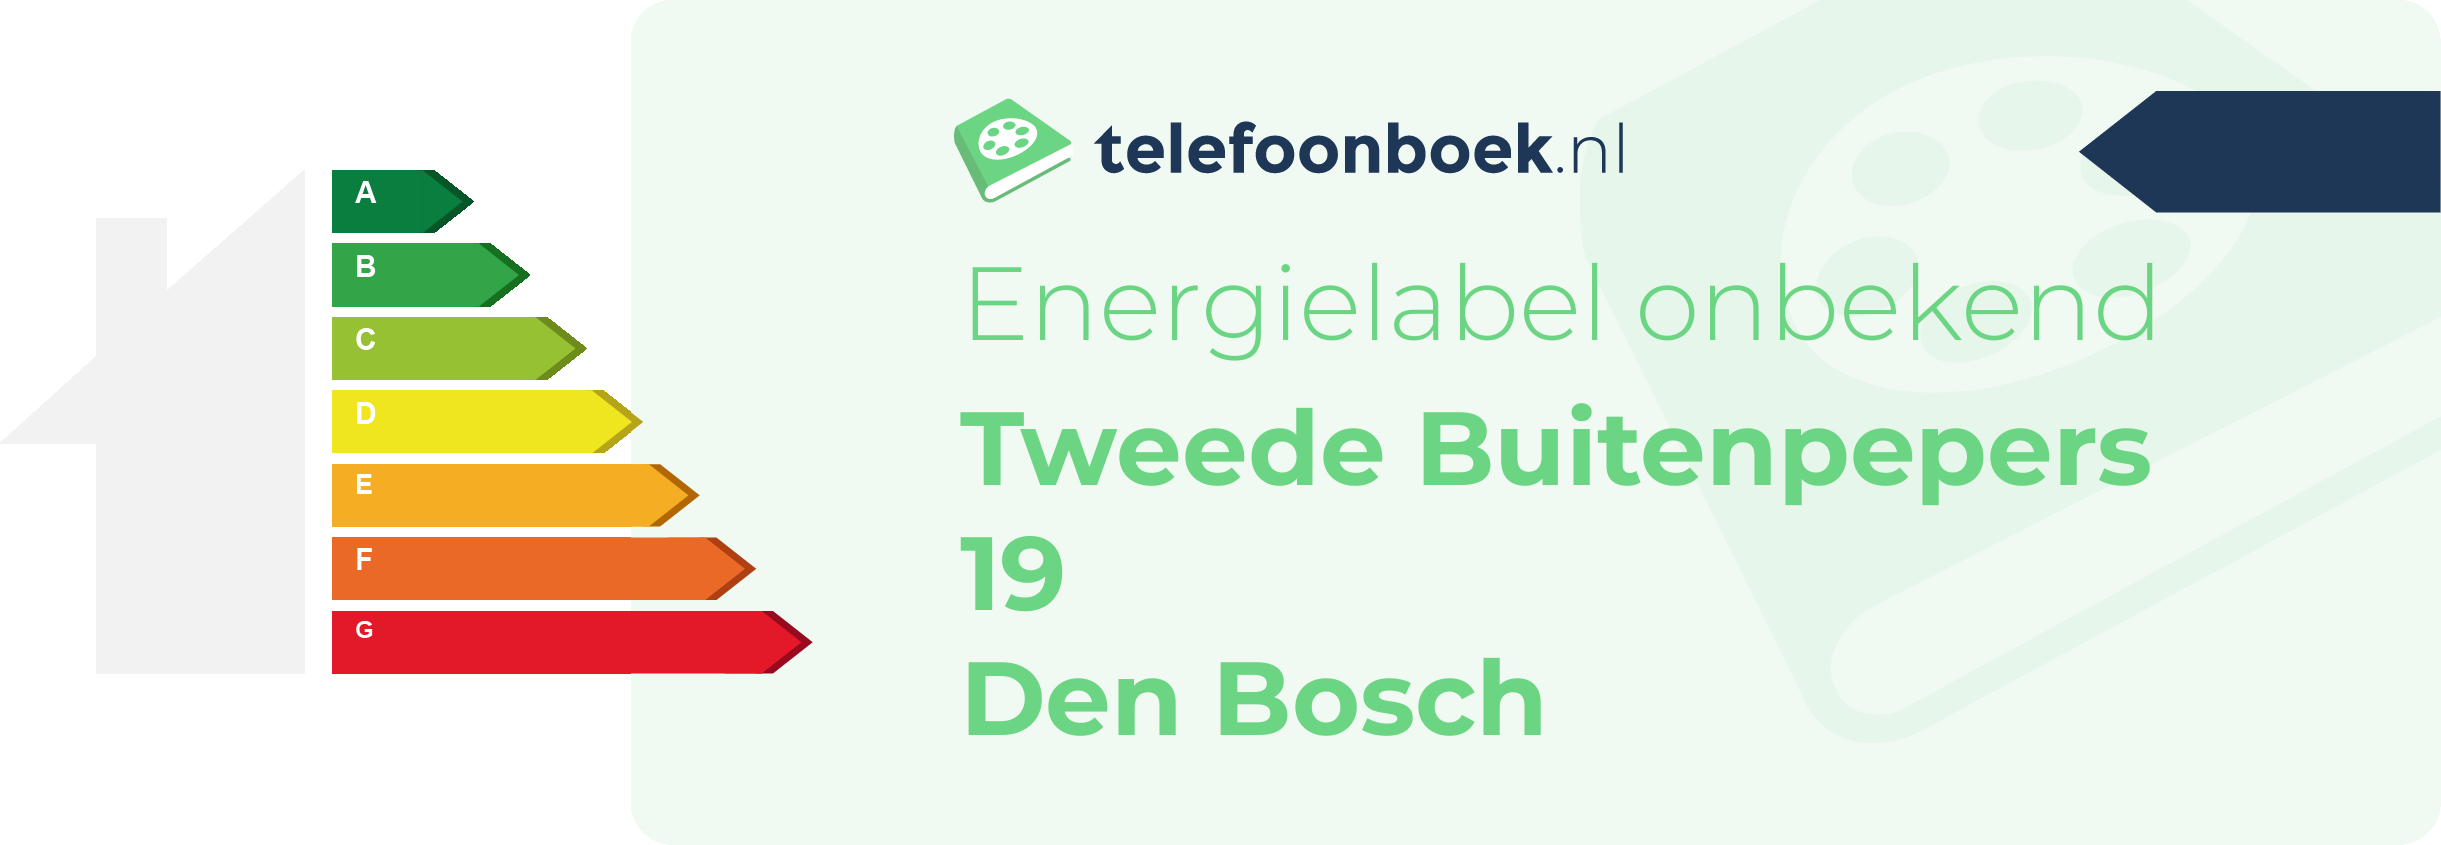 Energielabel Tweede Buitenpepers 19 Den Bosch